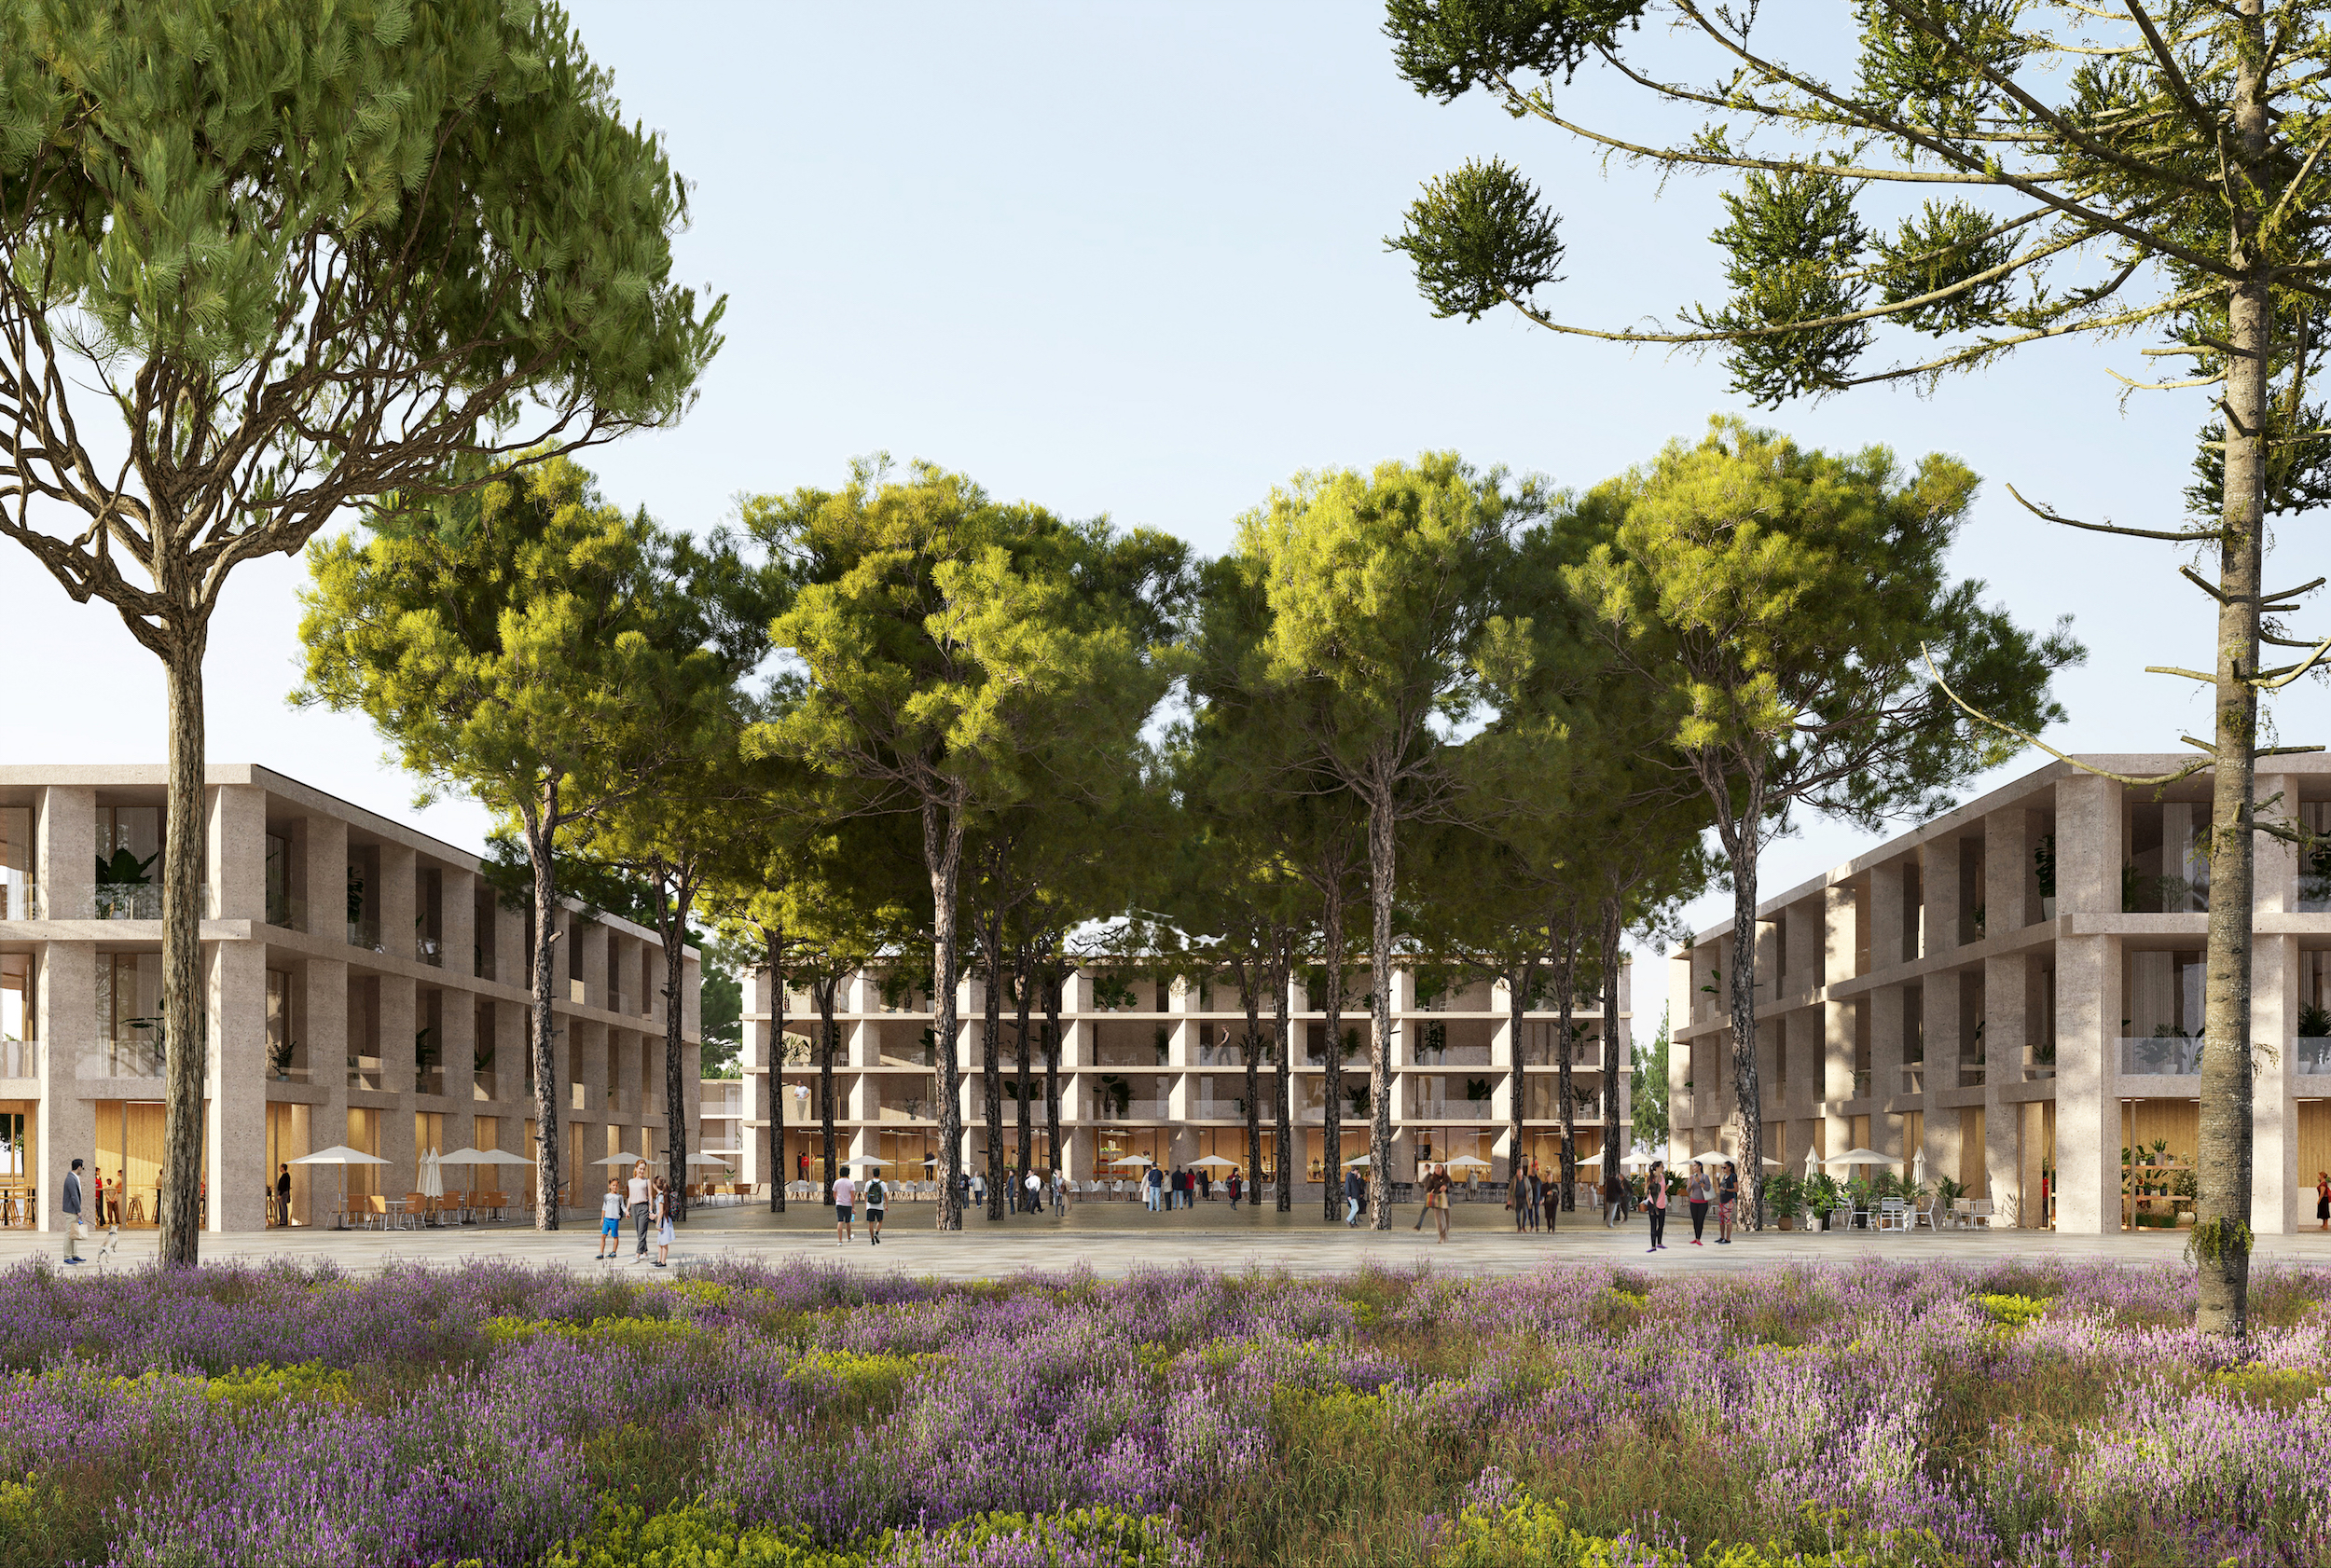 Nîmes Zac du Mas Lombard « Réaliser un quartier modèle de résilience et de ville durable méditerranéenne »